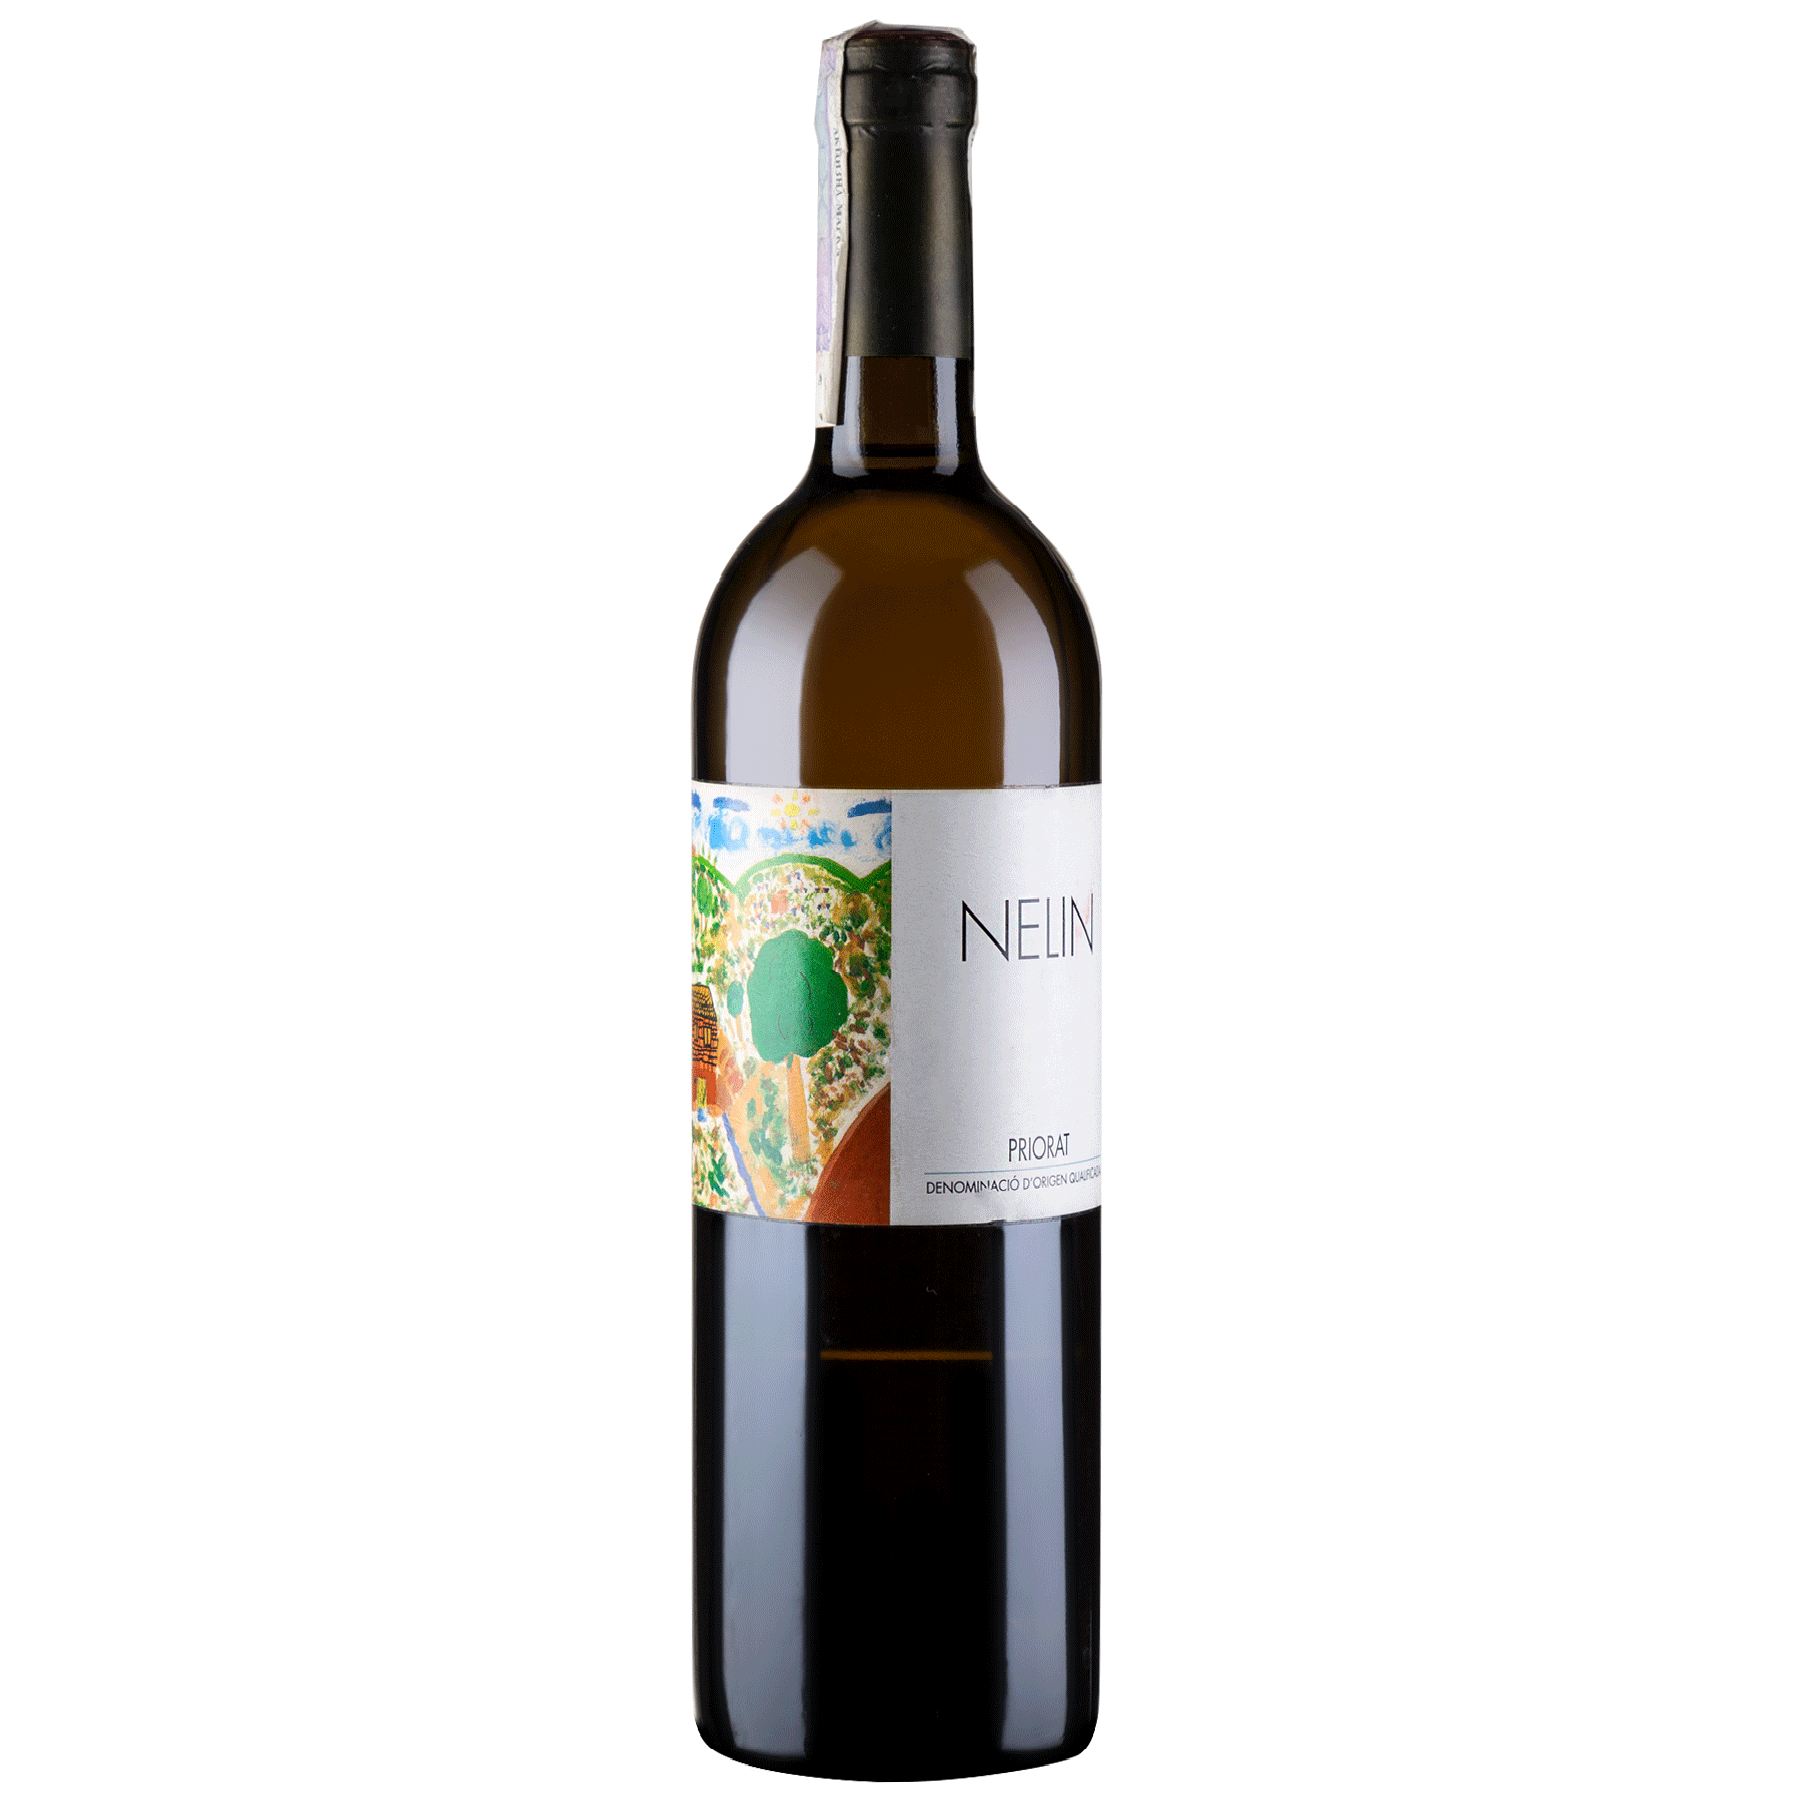 Вино Clos Mogador Nelin 2008, белое, сухое, 13%, 0,75 л - фото 1